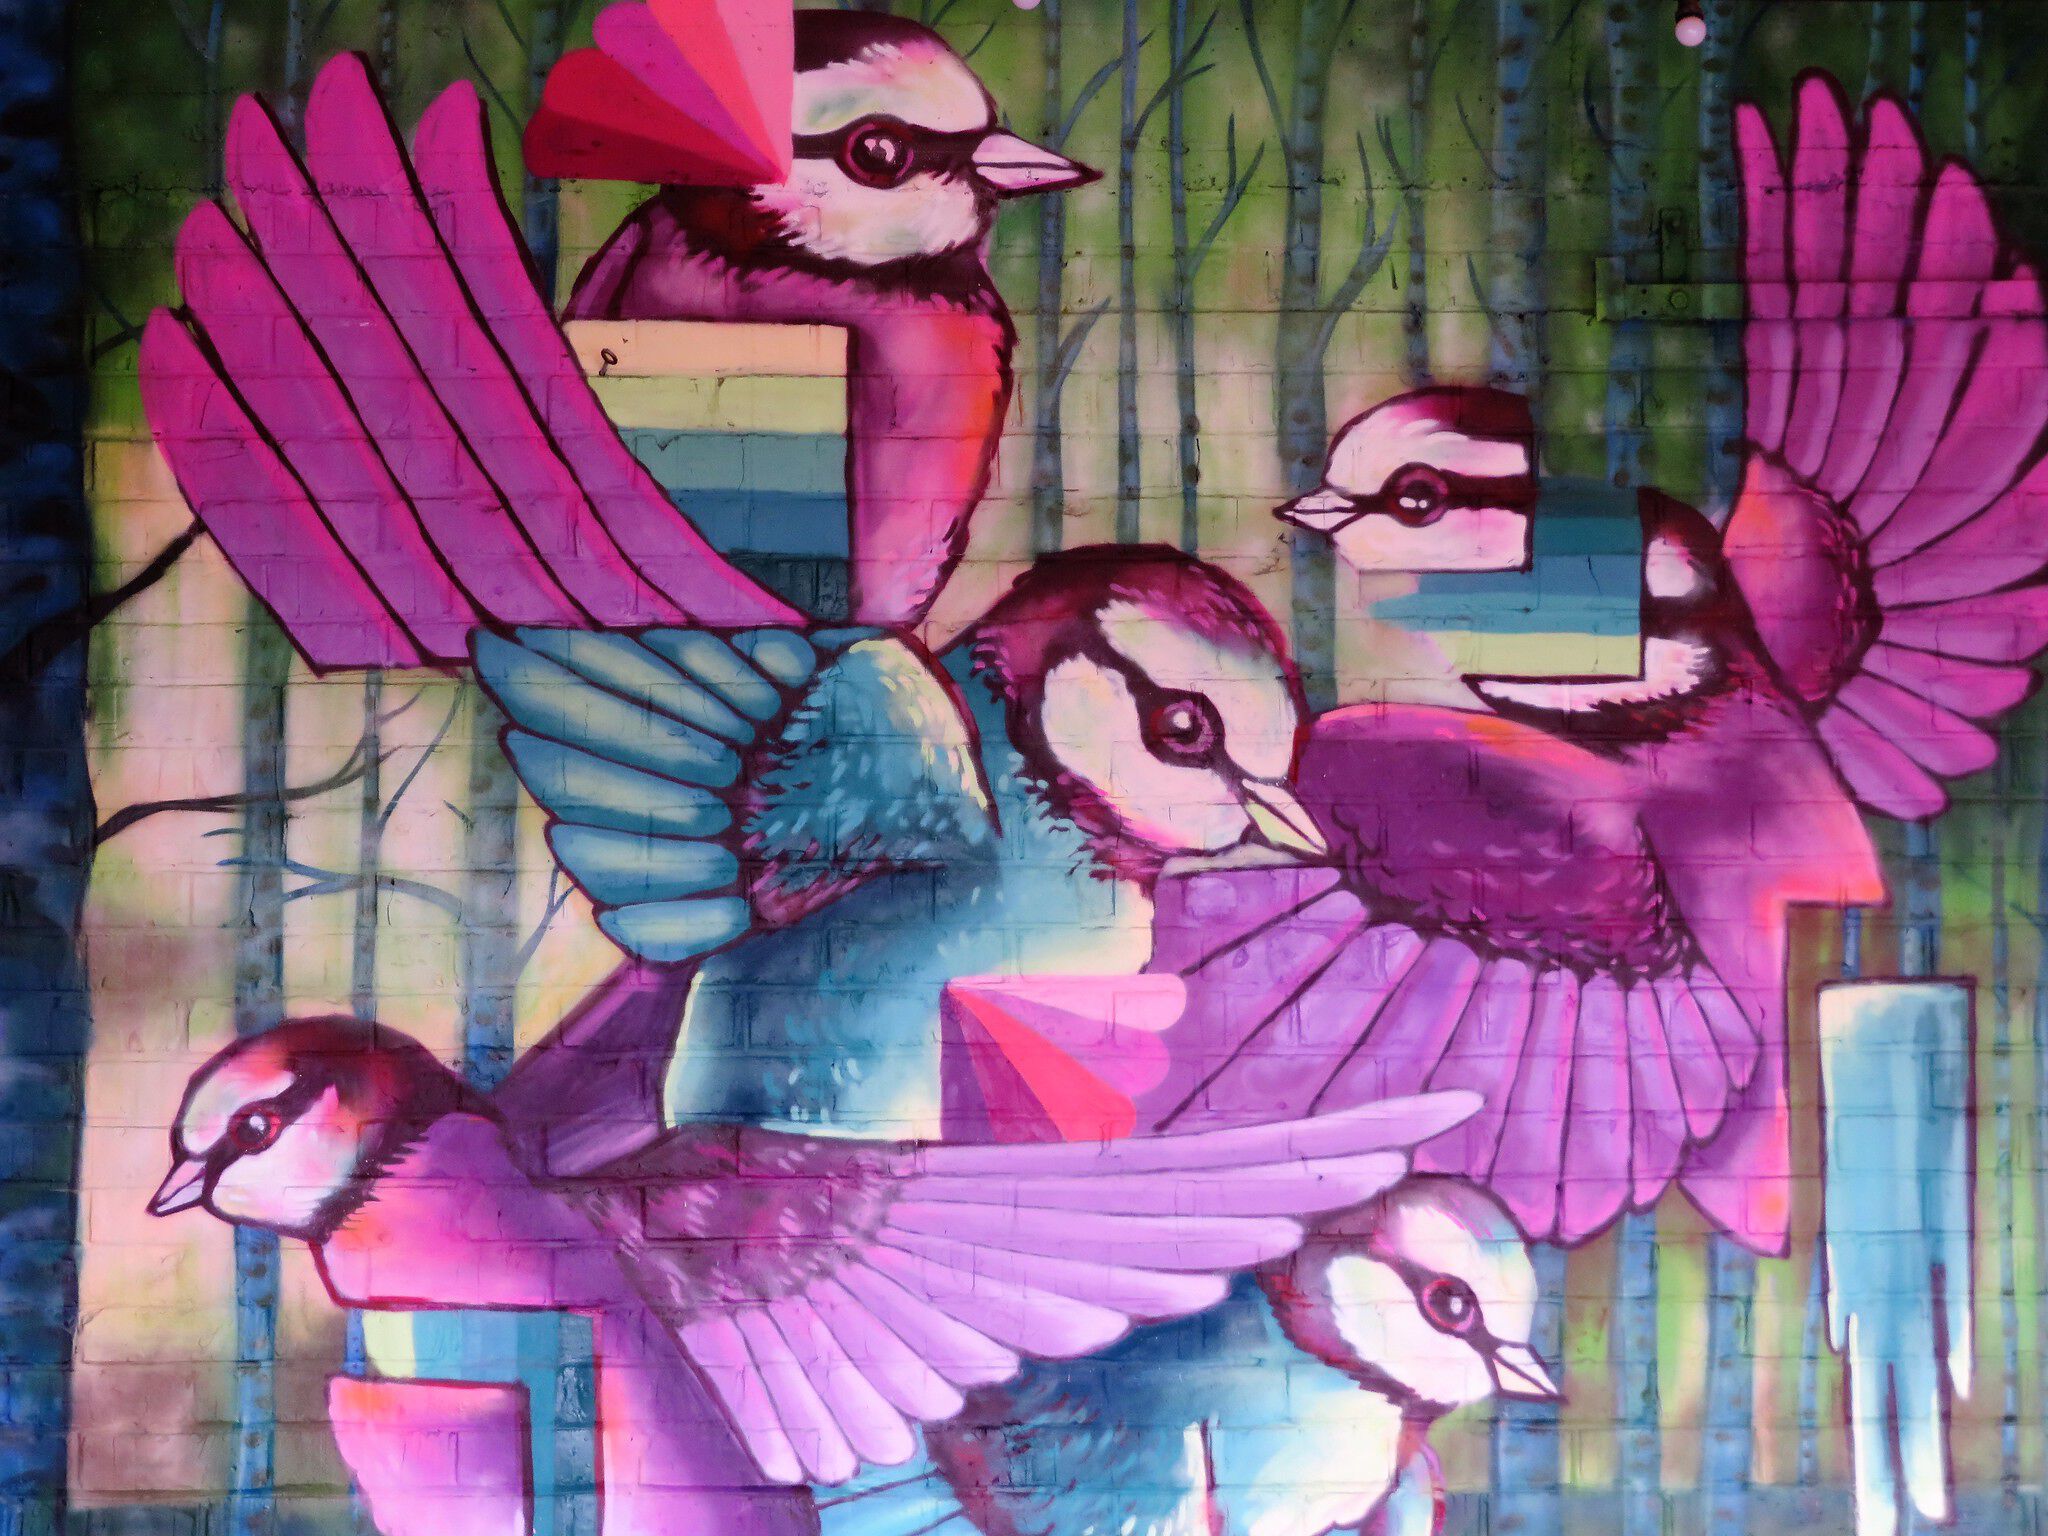 Xuas, Huascaya, Nigel Leirens&mdash;Caged birds sing about freedom, free birds fly